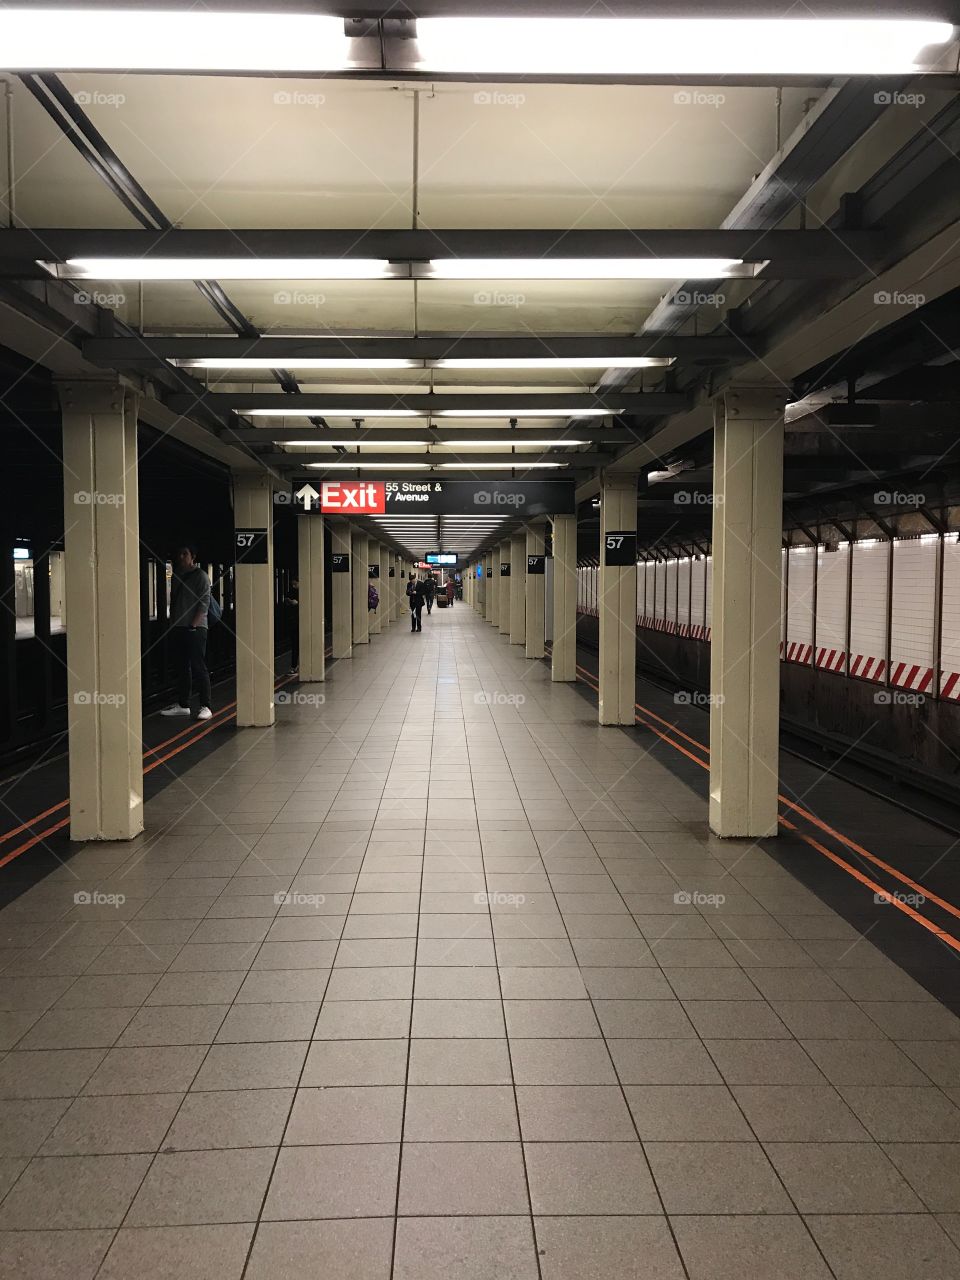 Subway station NYC 